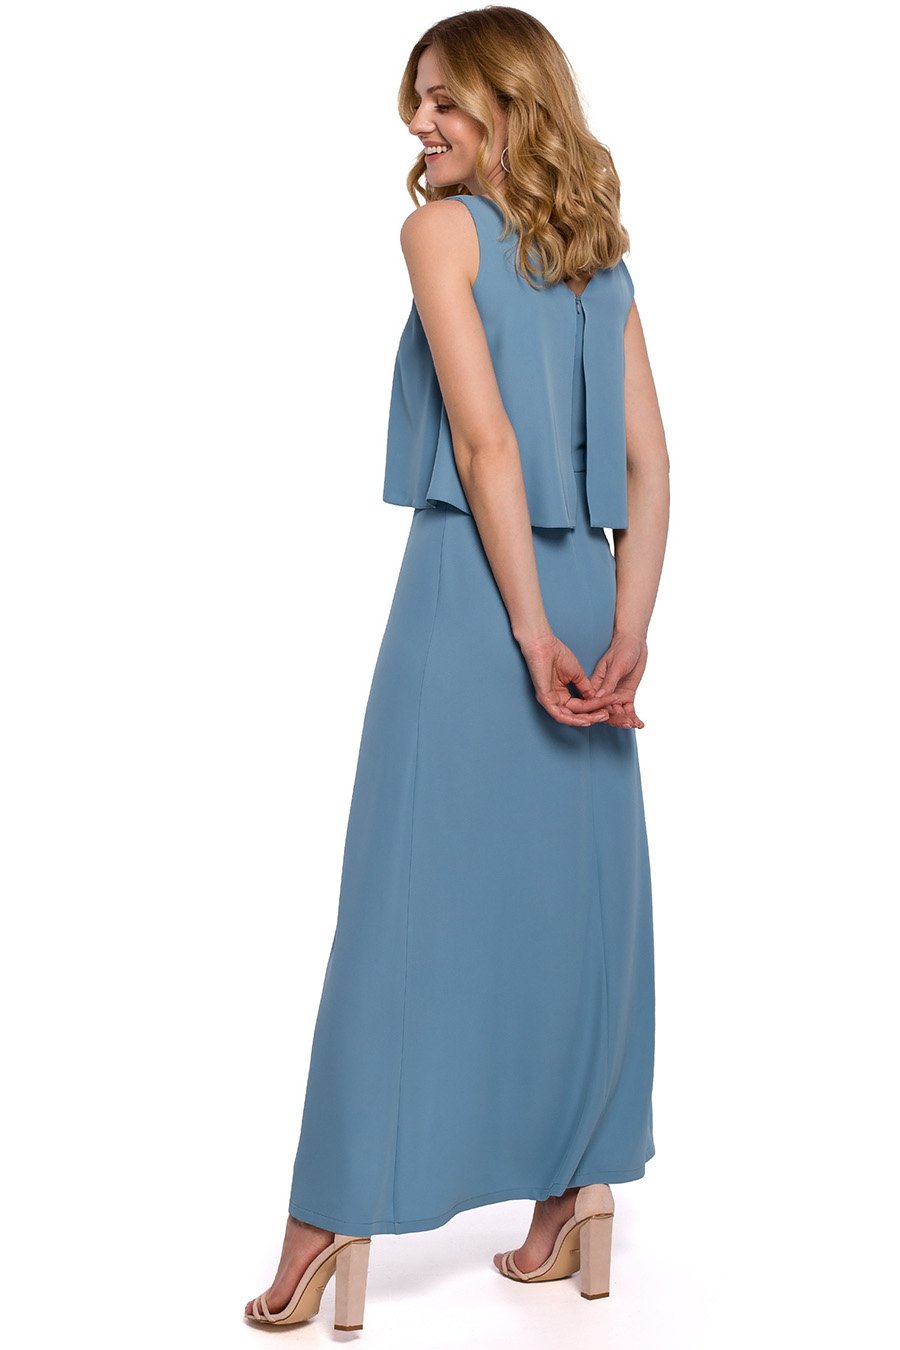 Γυναικείο φόρεμα Livia, Γαλάζιο 2